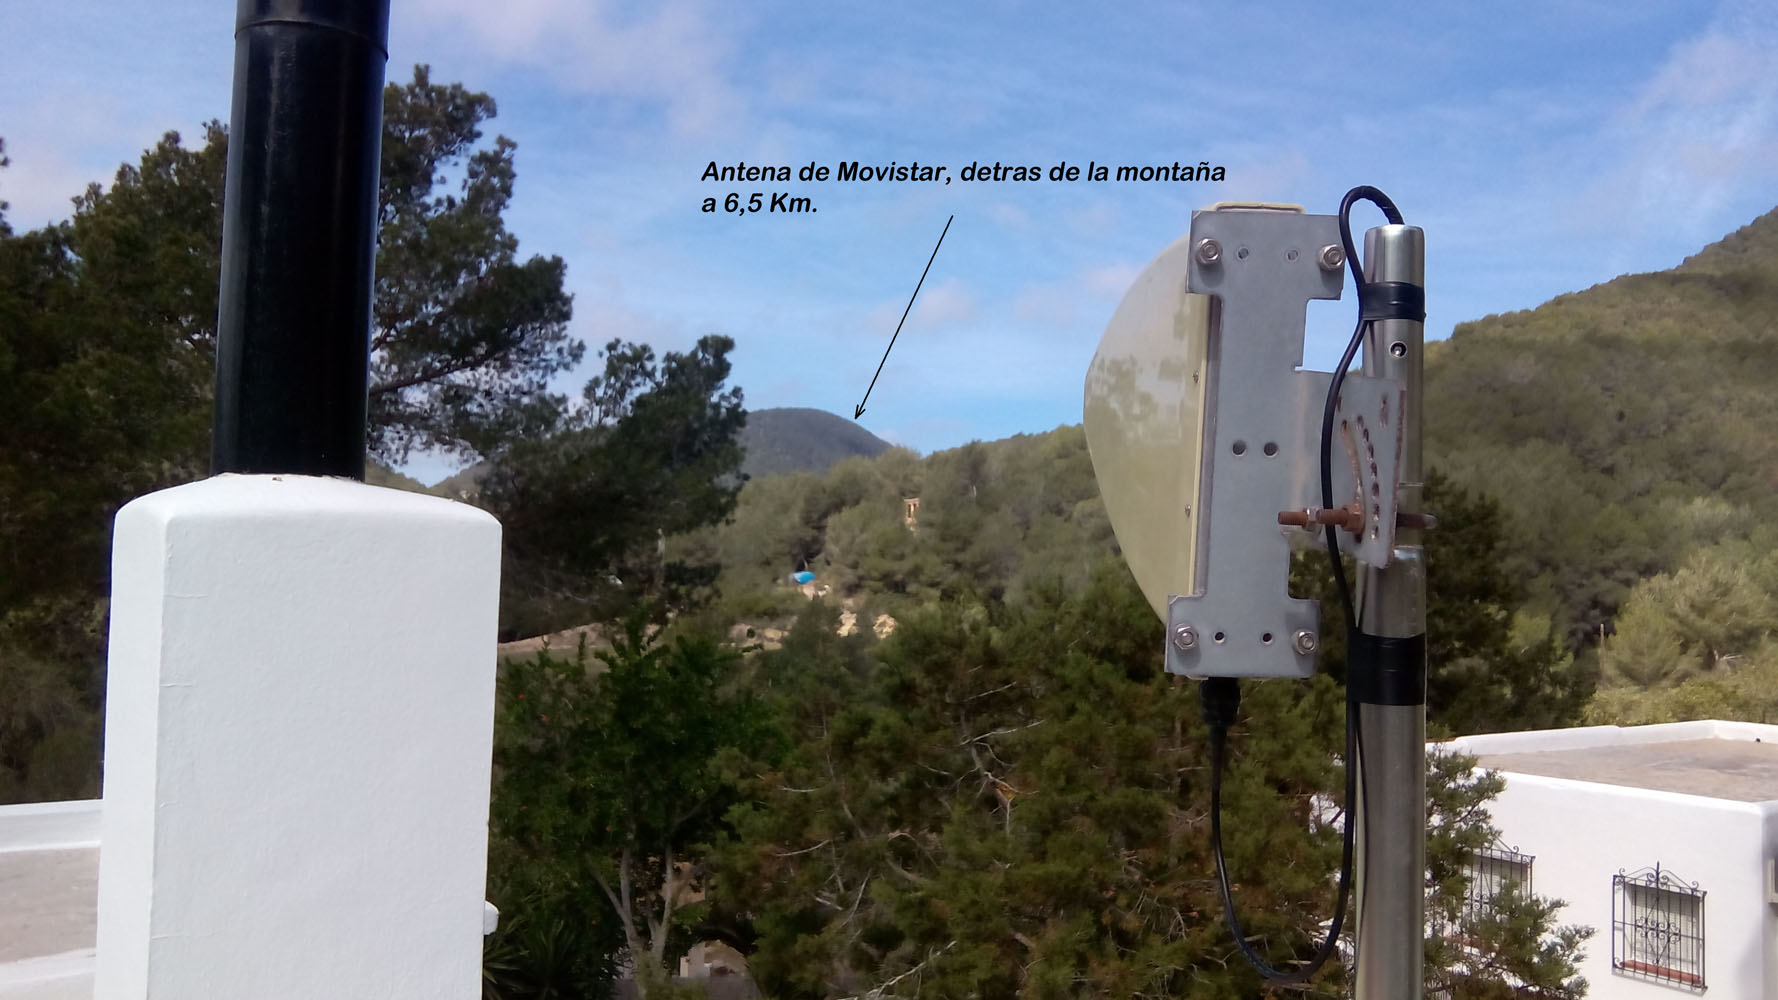 Solucionado: ¿Y si no llega el ADSL…? ¡Hogar 3G hasta 10 Mb y más! -  Comunidad Movistar